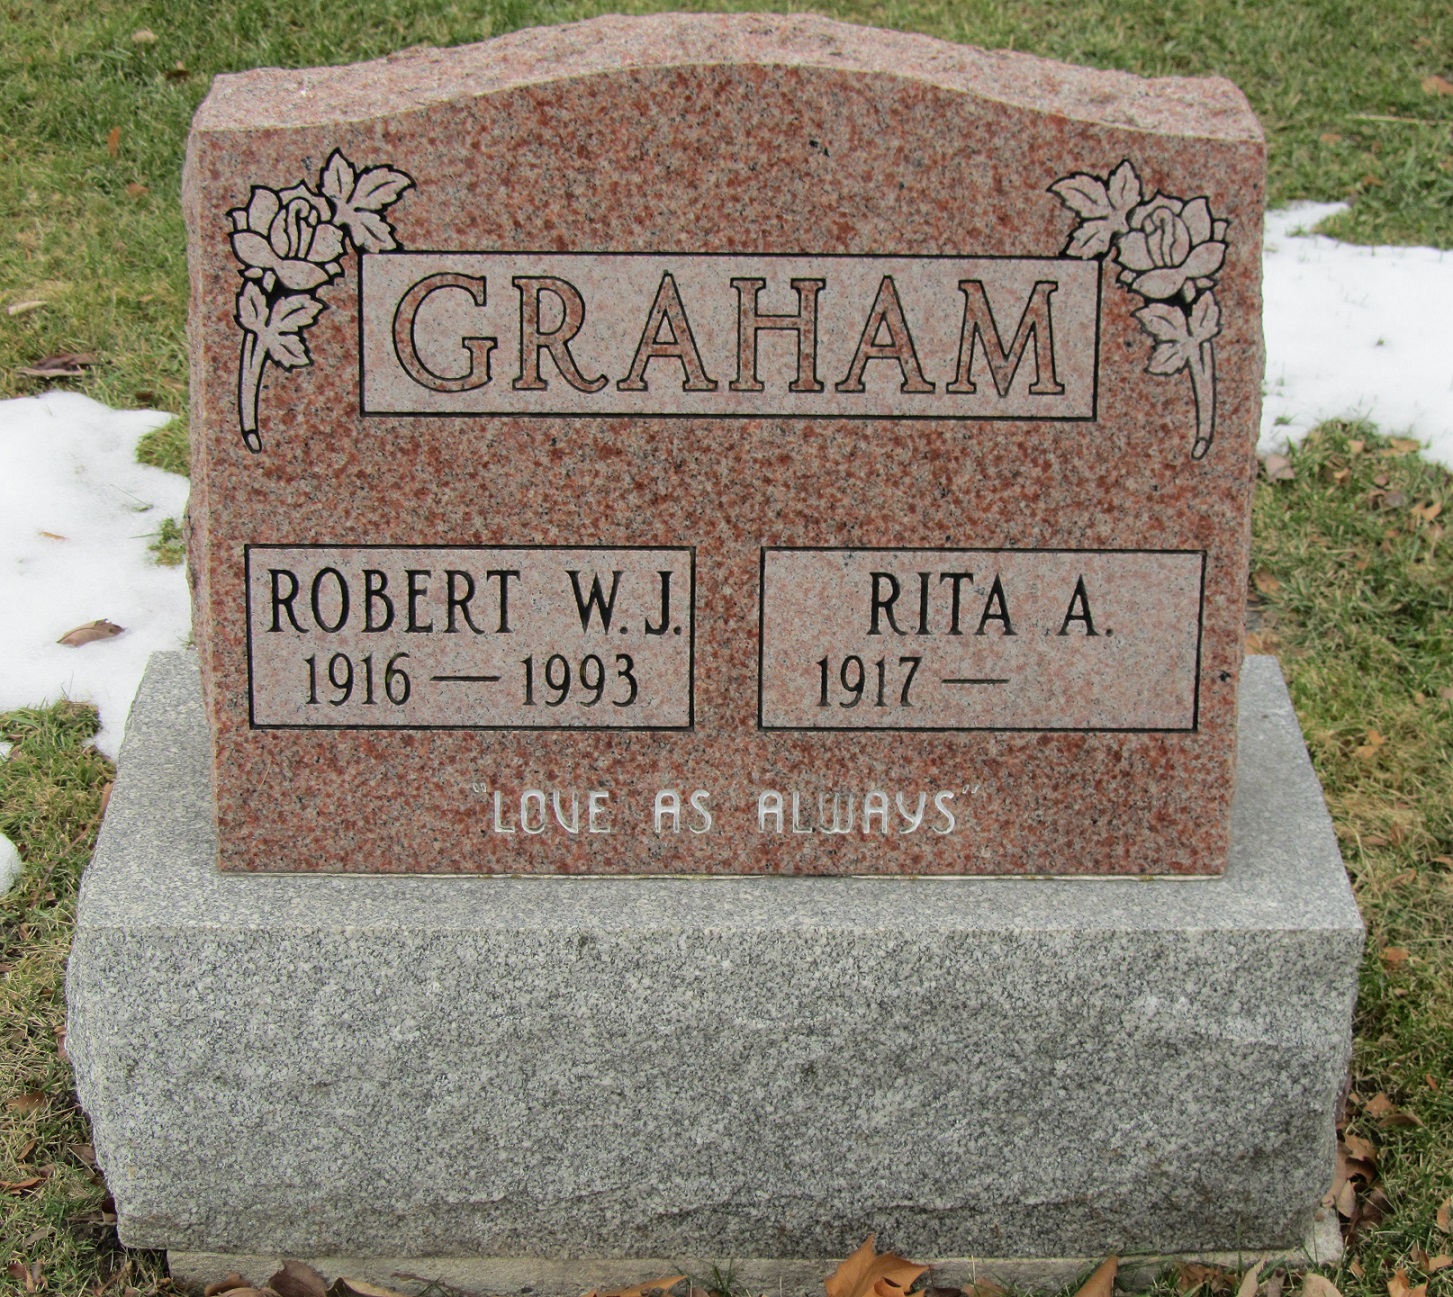 GRAHAM Robert W.J. 1915-1993_ Rita A. 1917